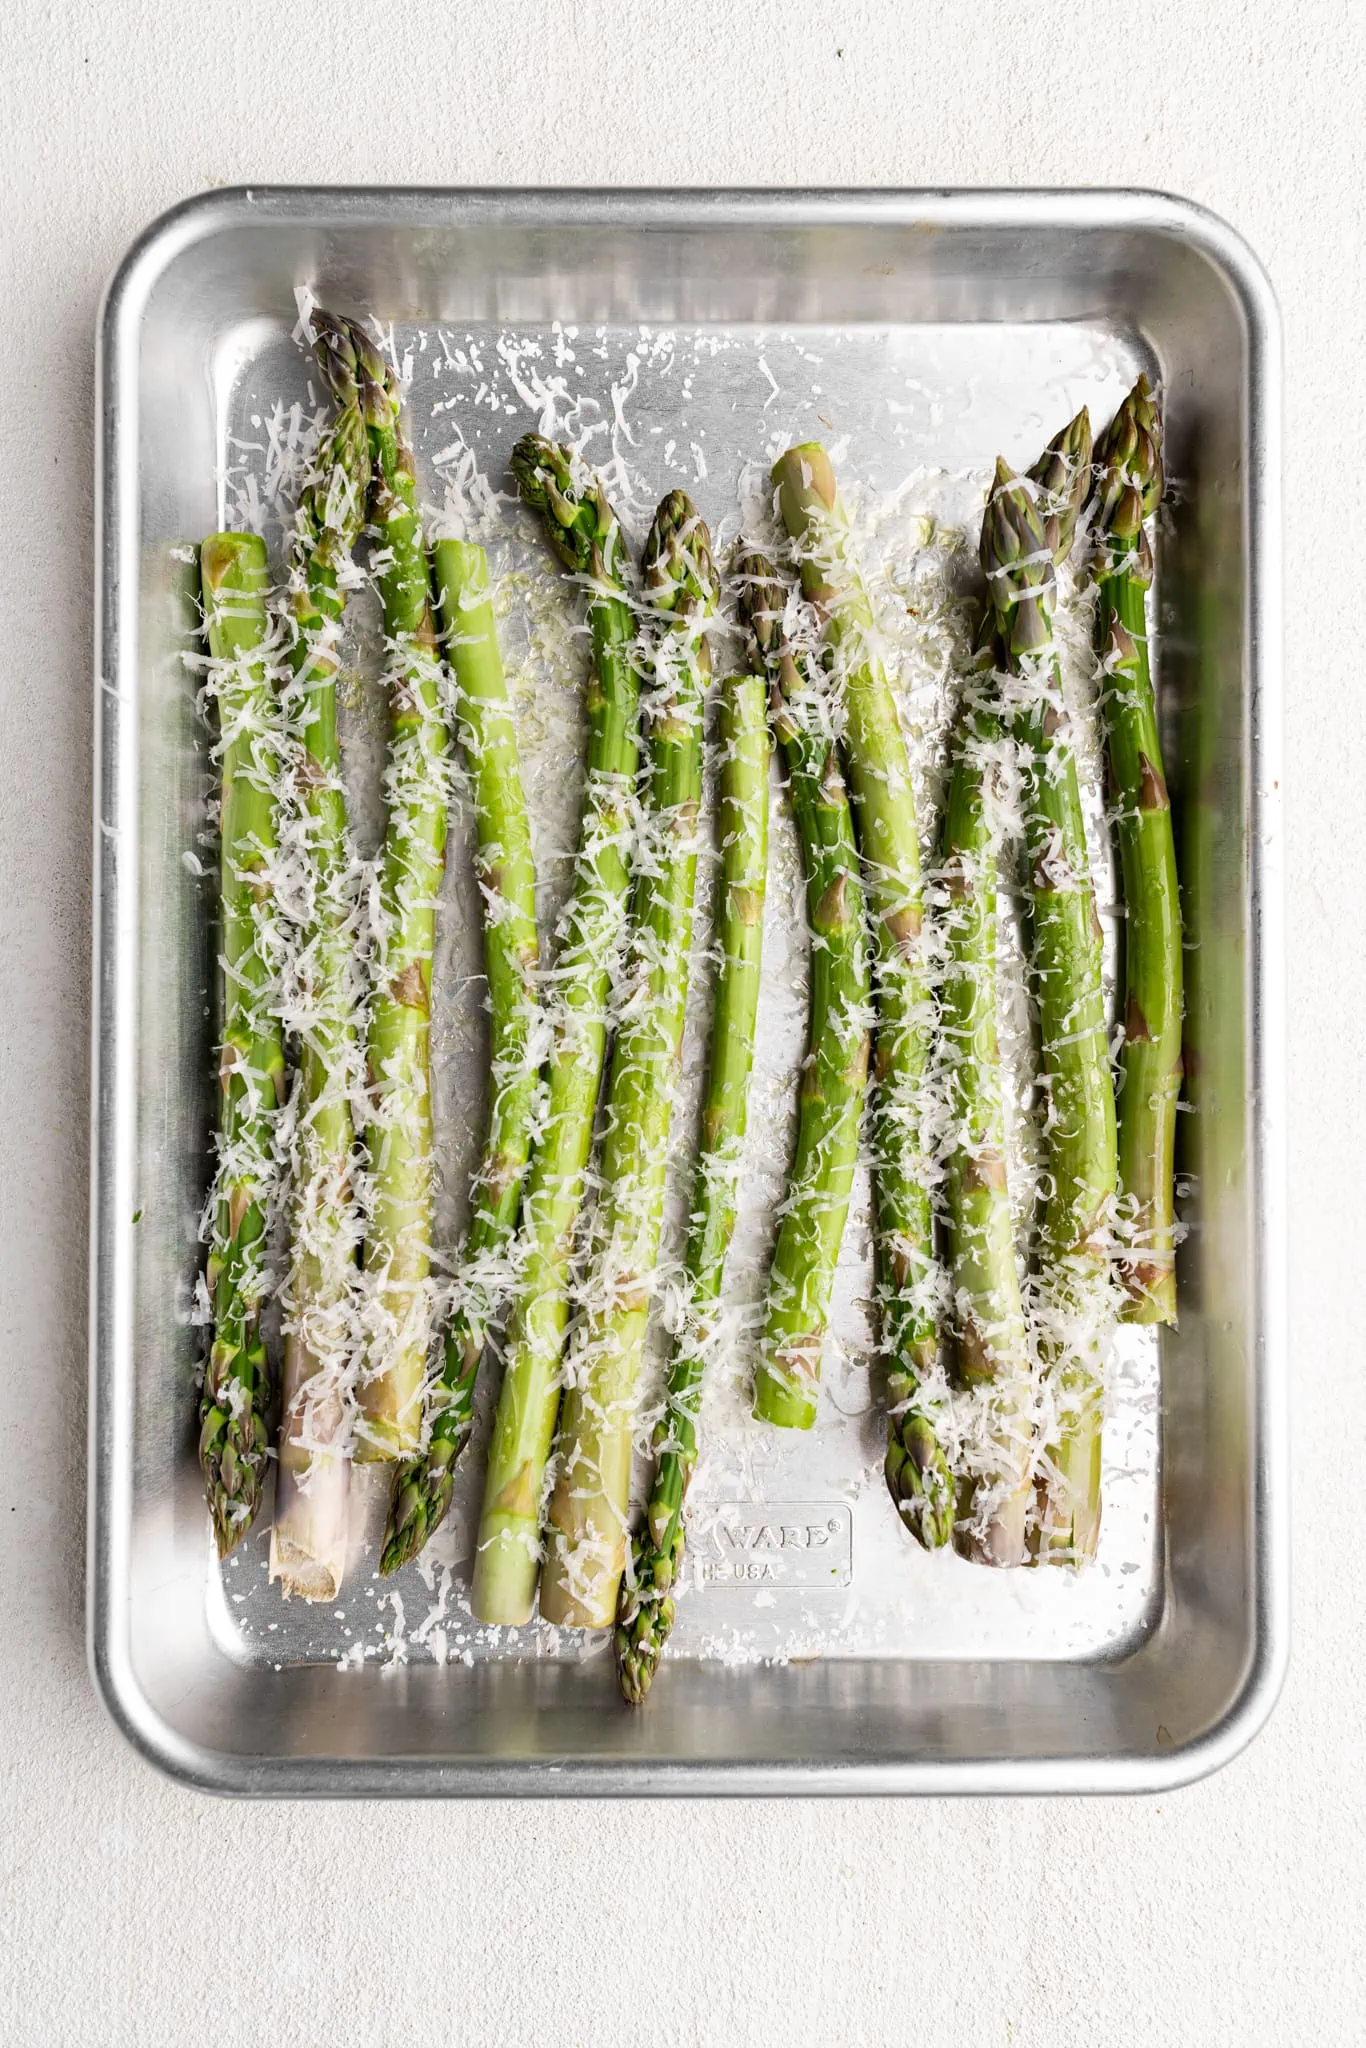 prepped parmesean asparagus, uncooked